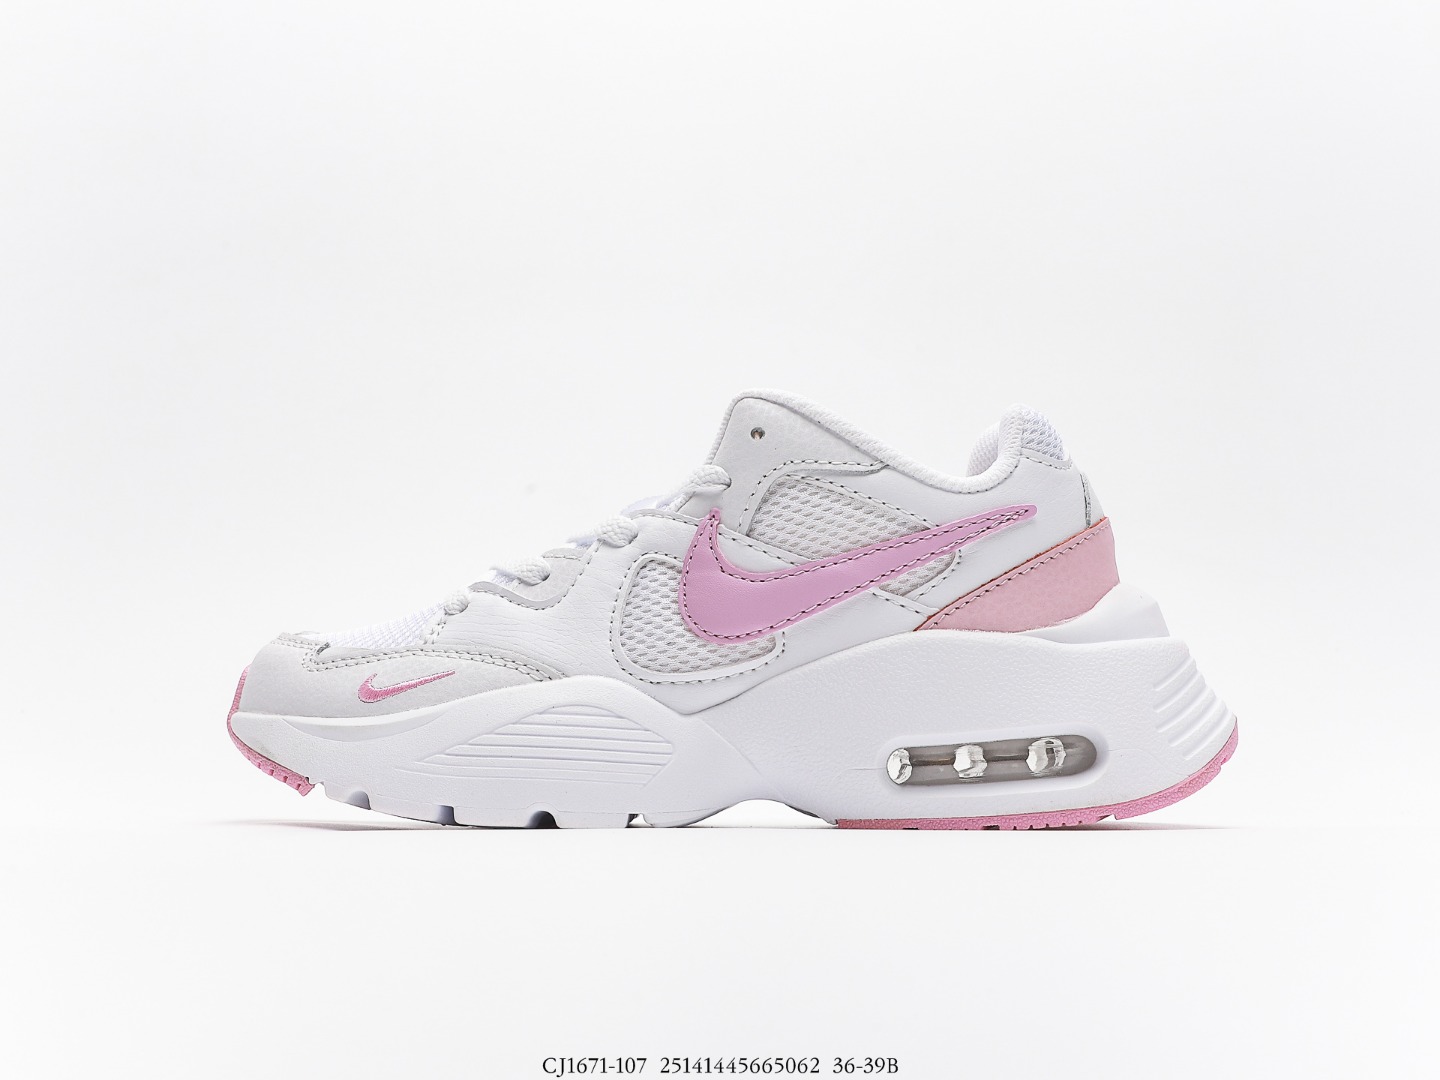 Nike Air Max Fusion White Pink Glaze_CJ1671-107 (en inglés)